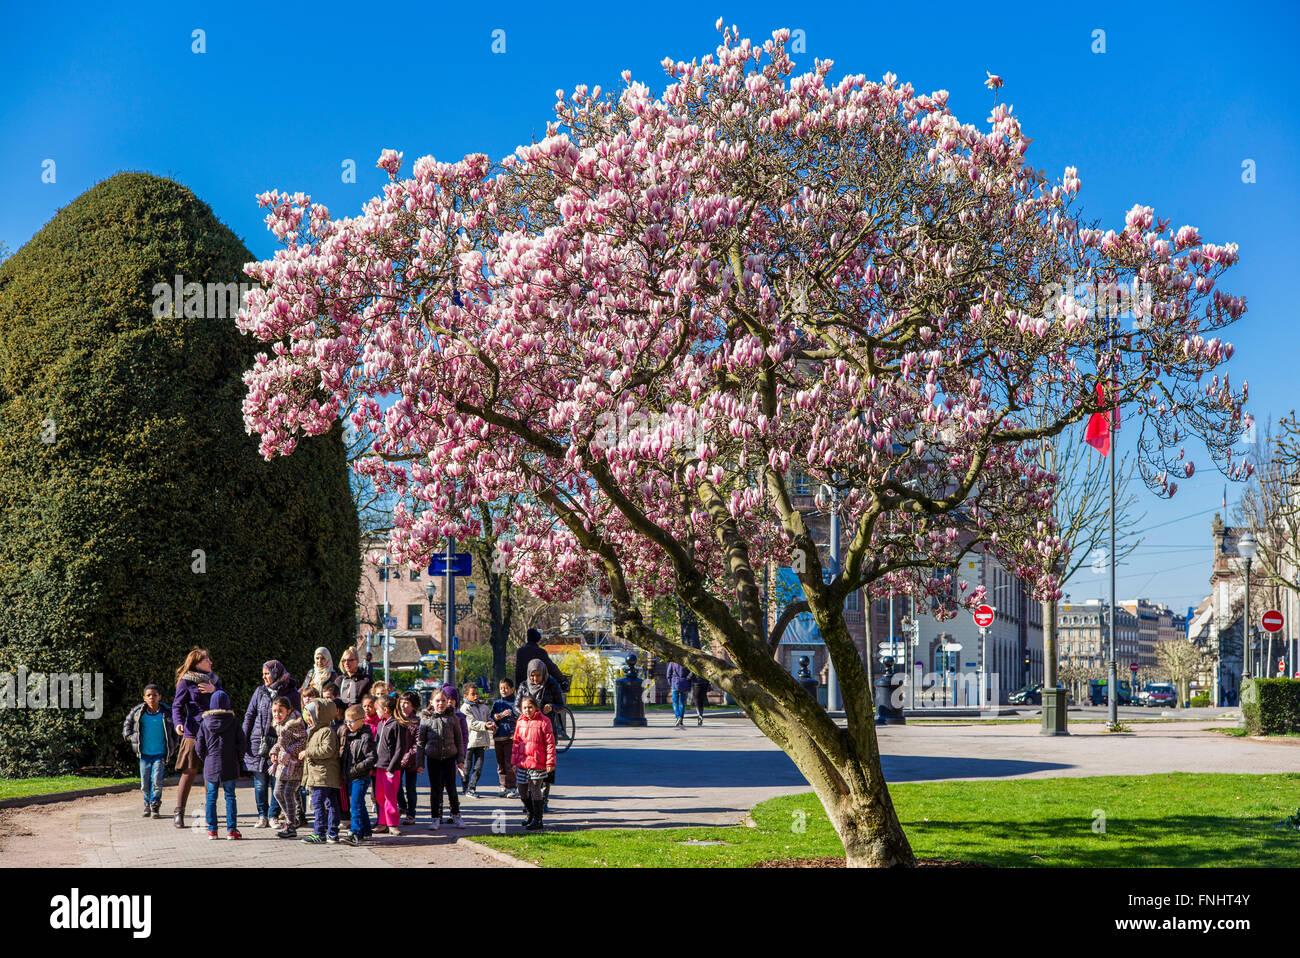 Fioritura albero di magnolia, scolari, Place de la République square, Strasburgo, Alsazia, Francia Foto Stock